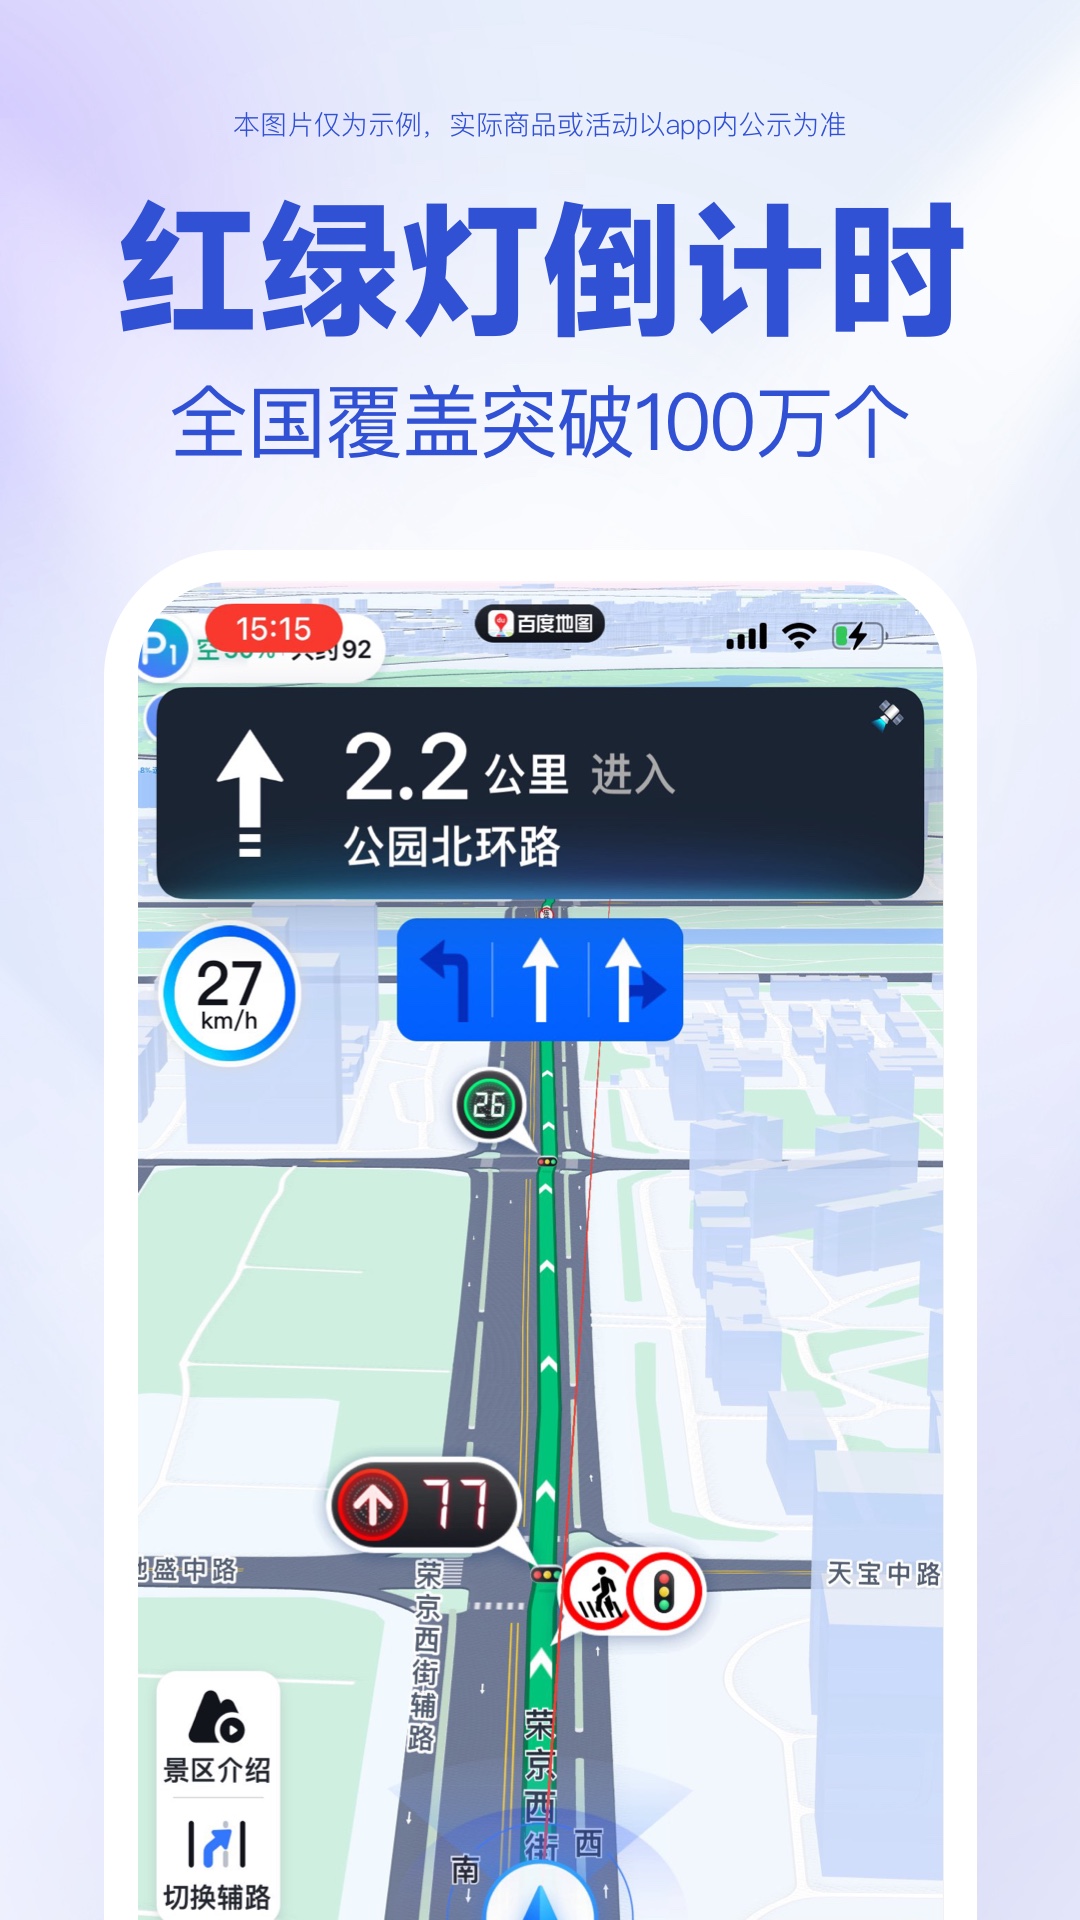 百度地图app官方界面截图预览(3)